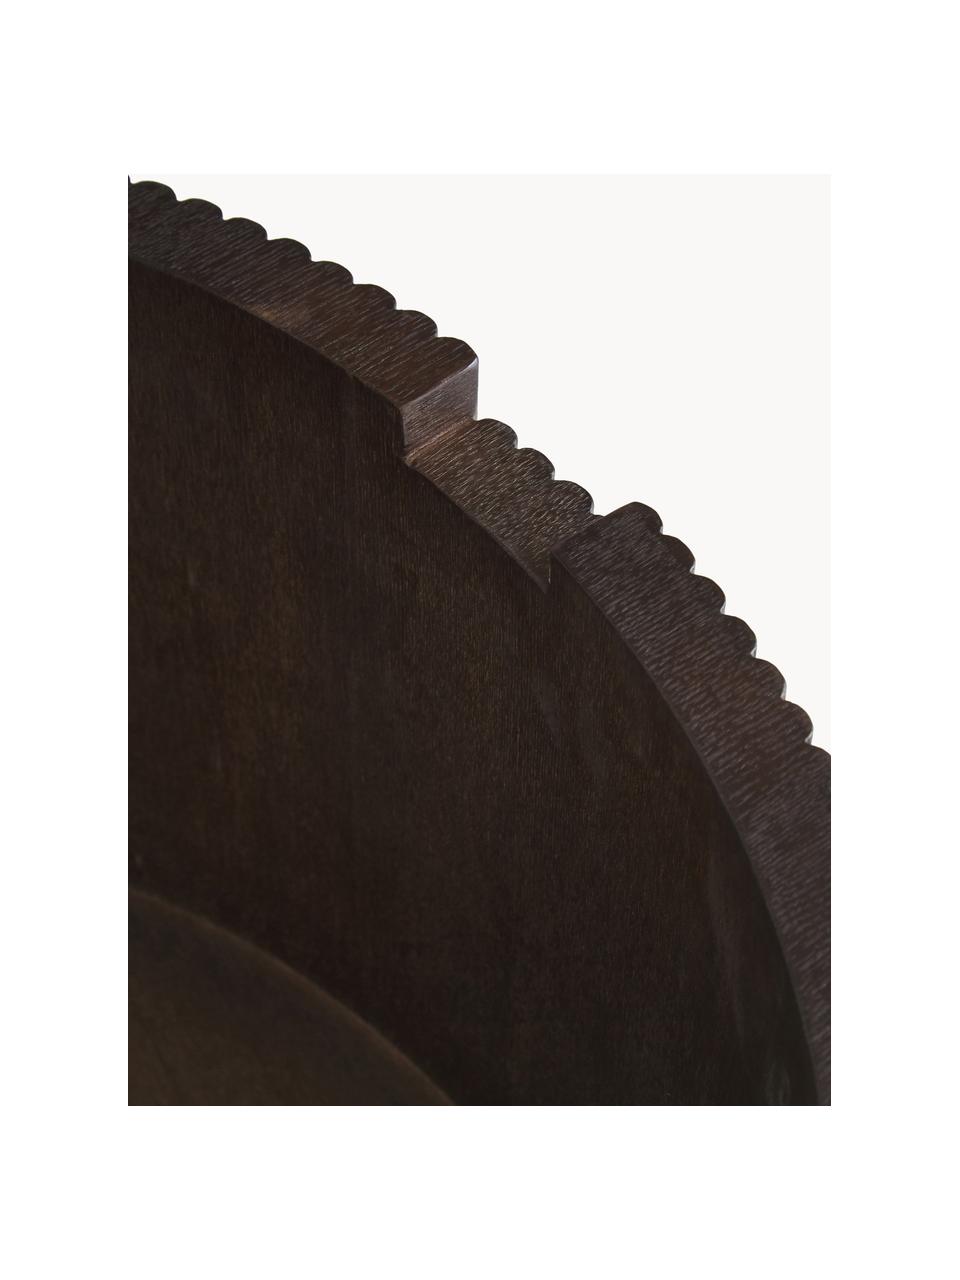 Runder Holz-Couchtisch Nele mit Stauraum, Mitteldichte Holzfaserplatte (MDF) mit Eschenholzfurnier, Holz, dunkelbraun lackiert, Ø 70 cm